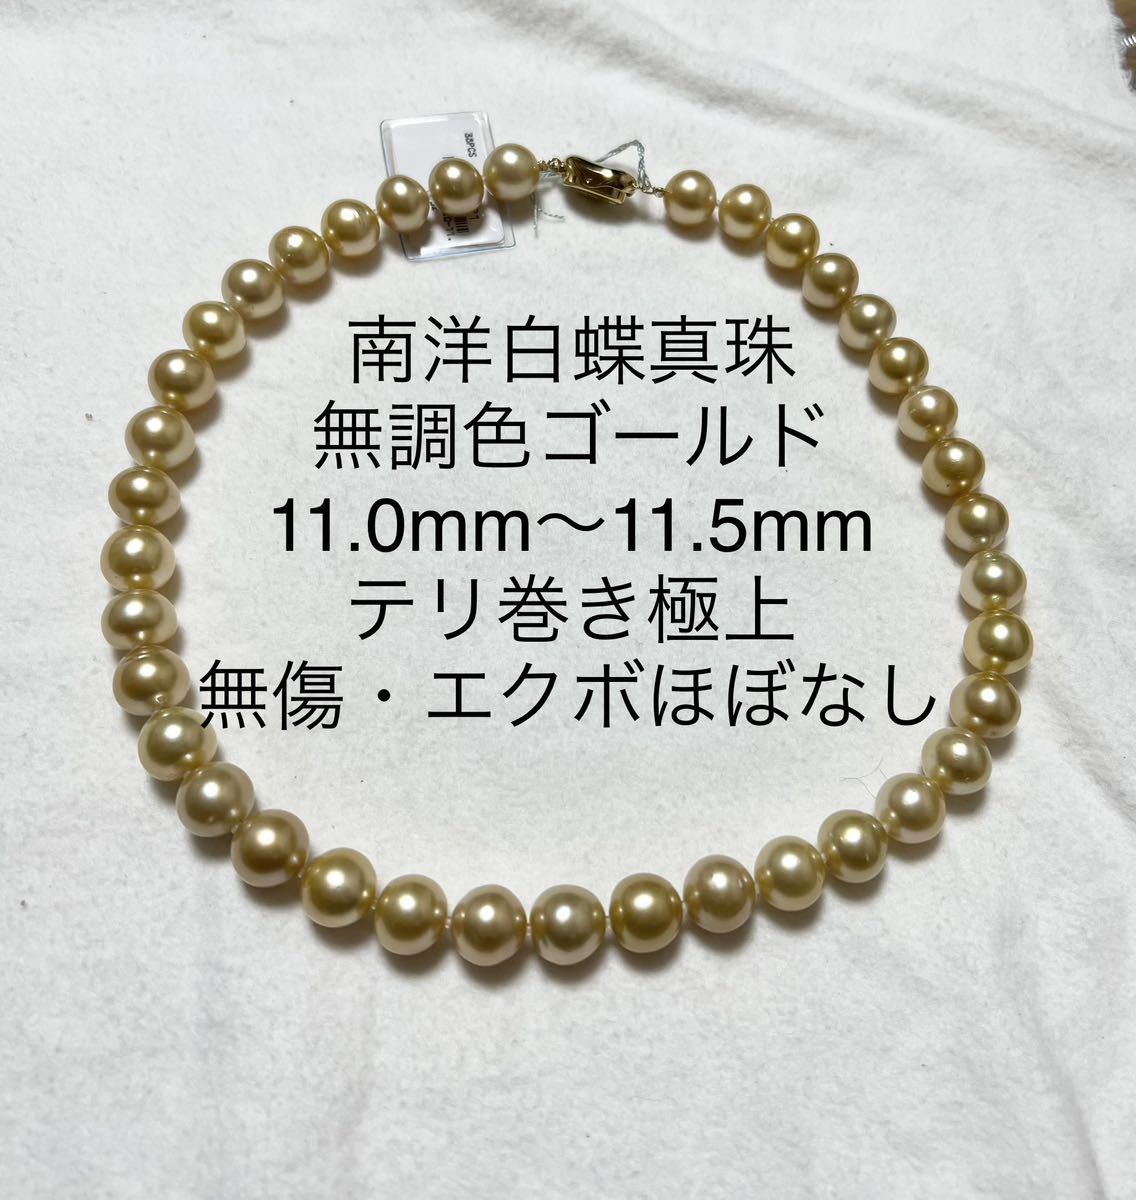 南洋白蝶真珠 無調色ゴールド 大珠11.0mm〜11.5mm - レディース